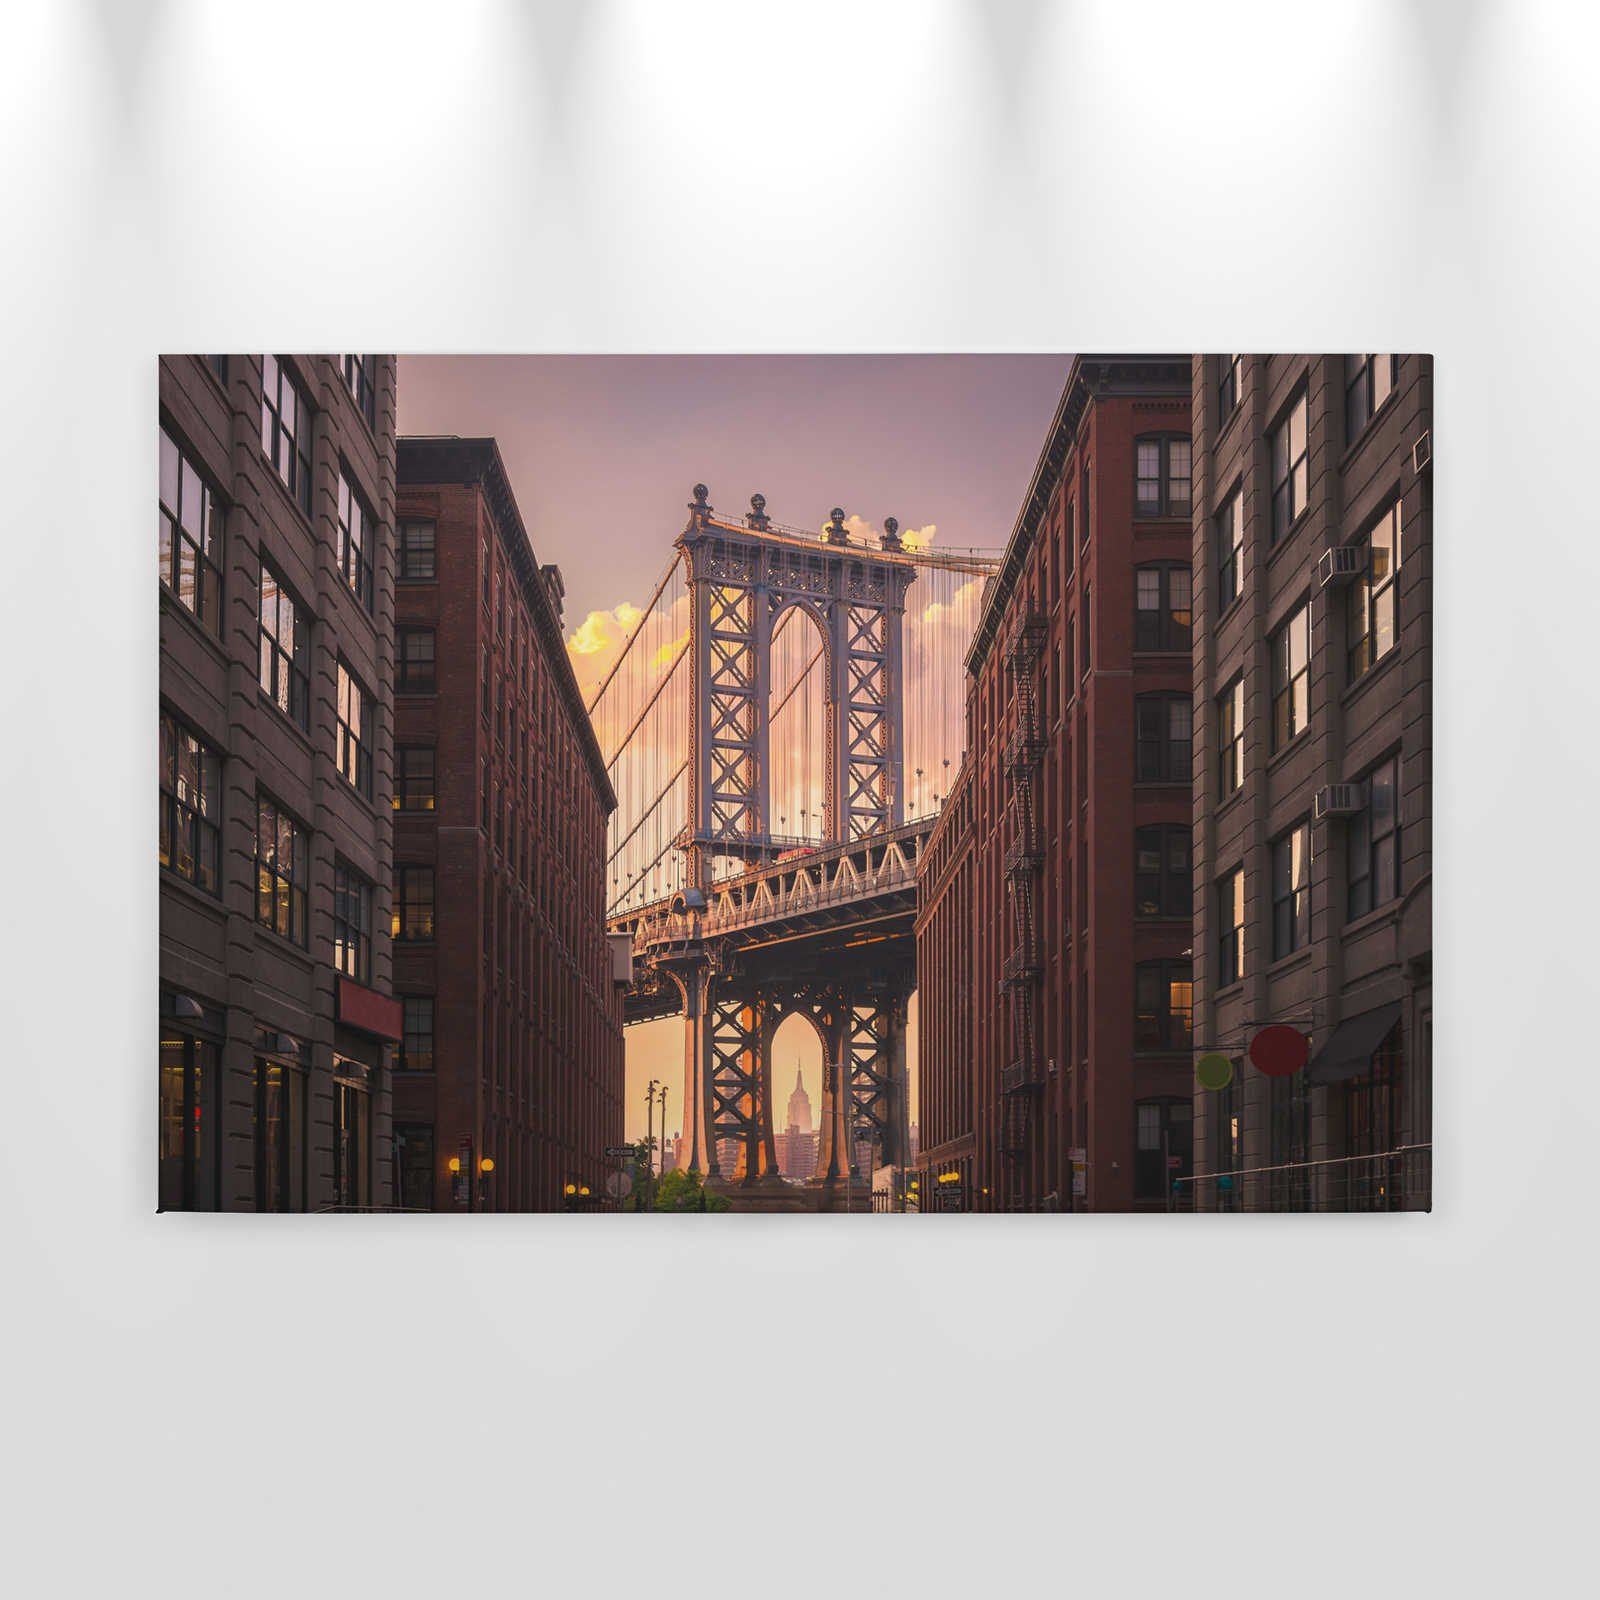             Muro Lei con el puente de Brooklyn desde Street View - 0,90 m x 0,60 m
        